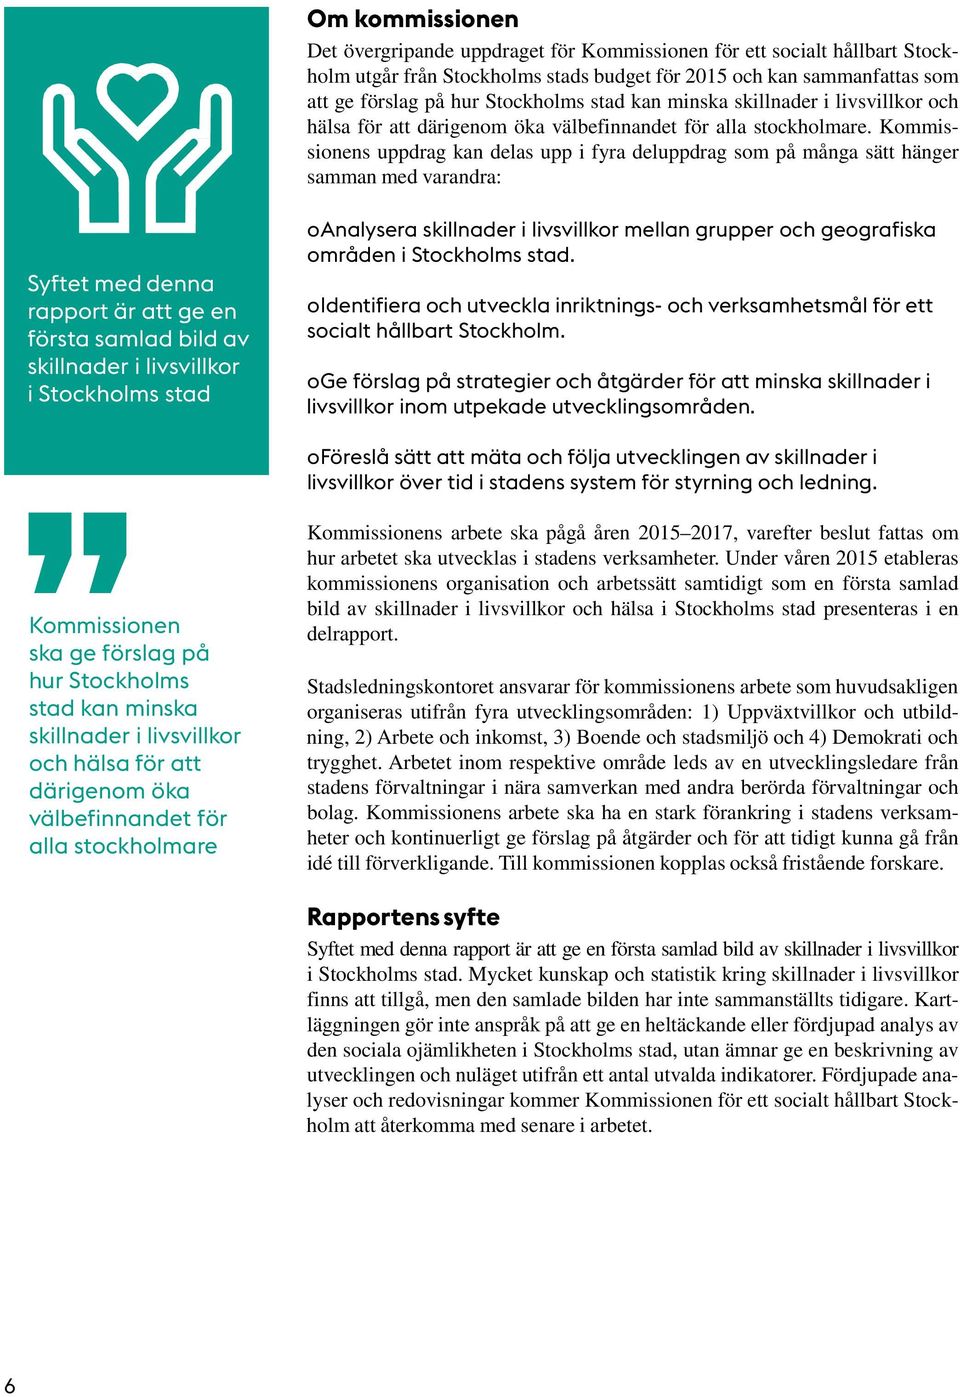 Kommissionens uppdrag kan delas upp i fyra deluppdrag som på många sätt hänger samman med varandra: Syftet med denna rapport är att ge en första samlad bild av skillnader i livsvillkor i Stockholms